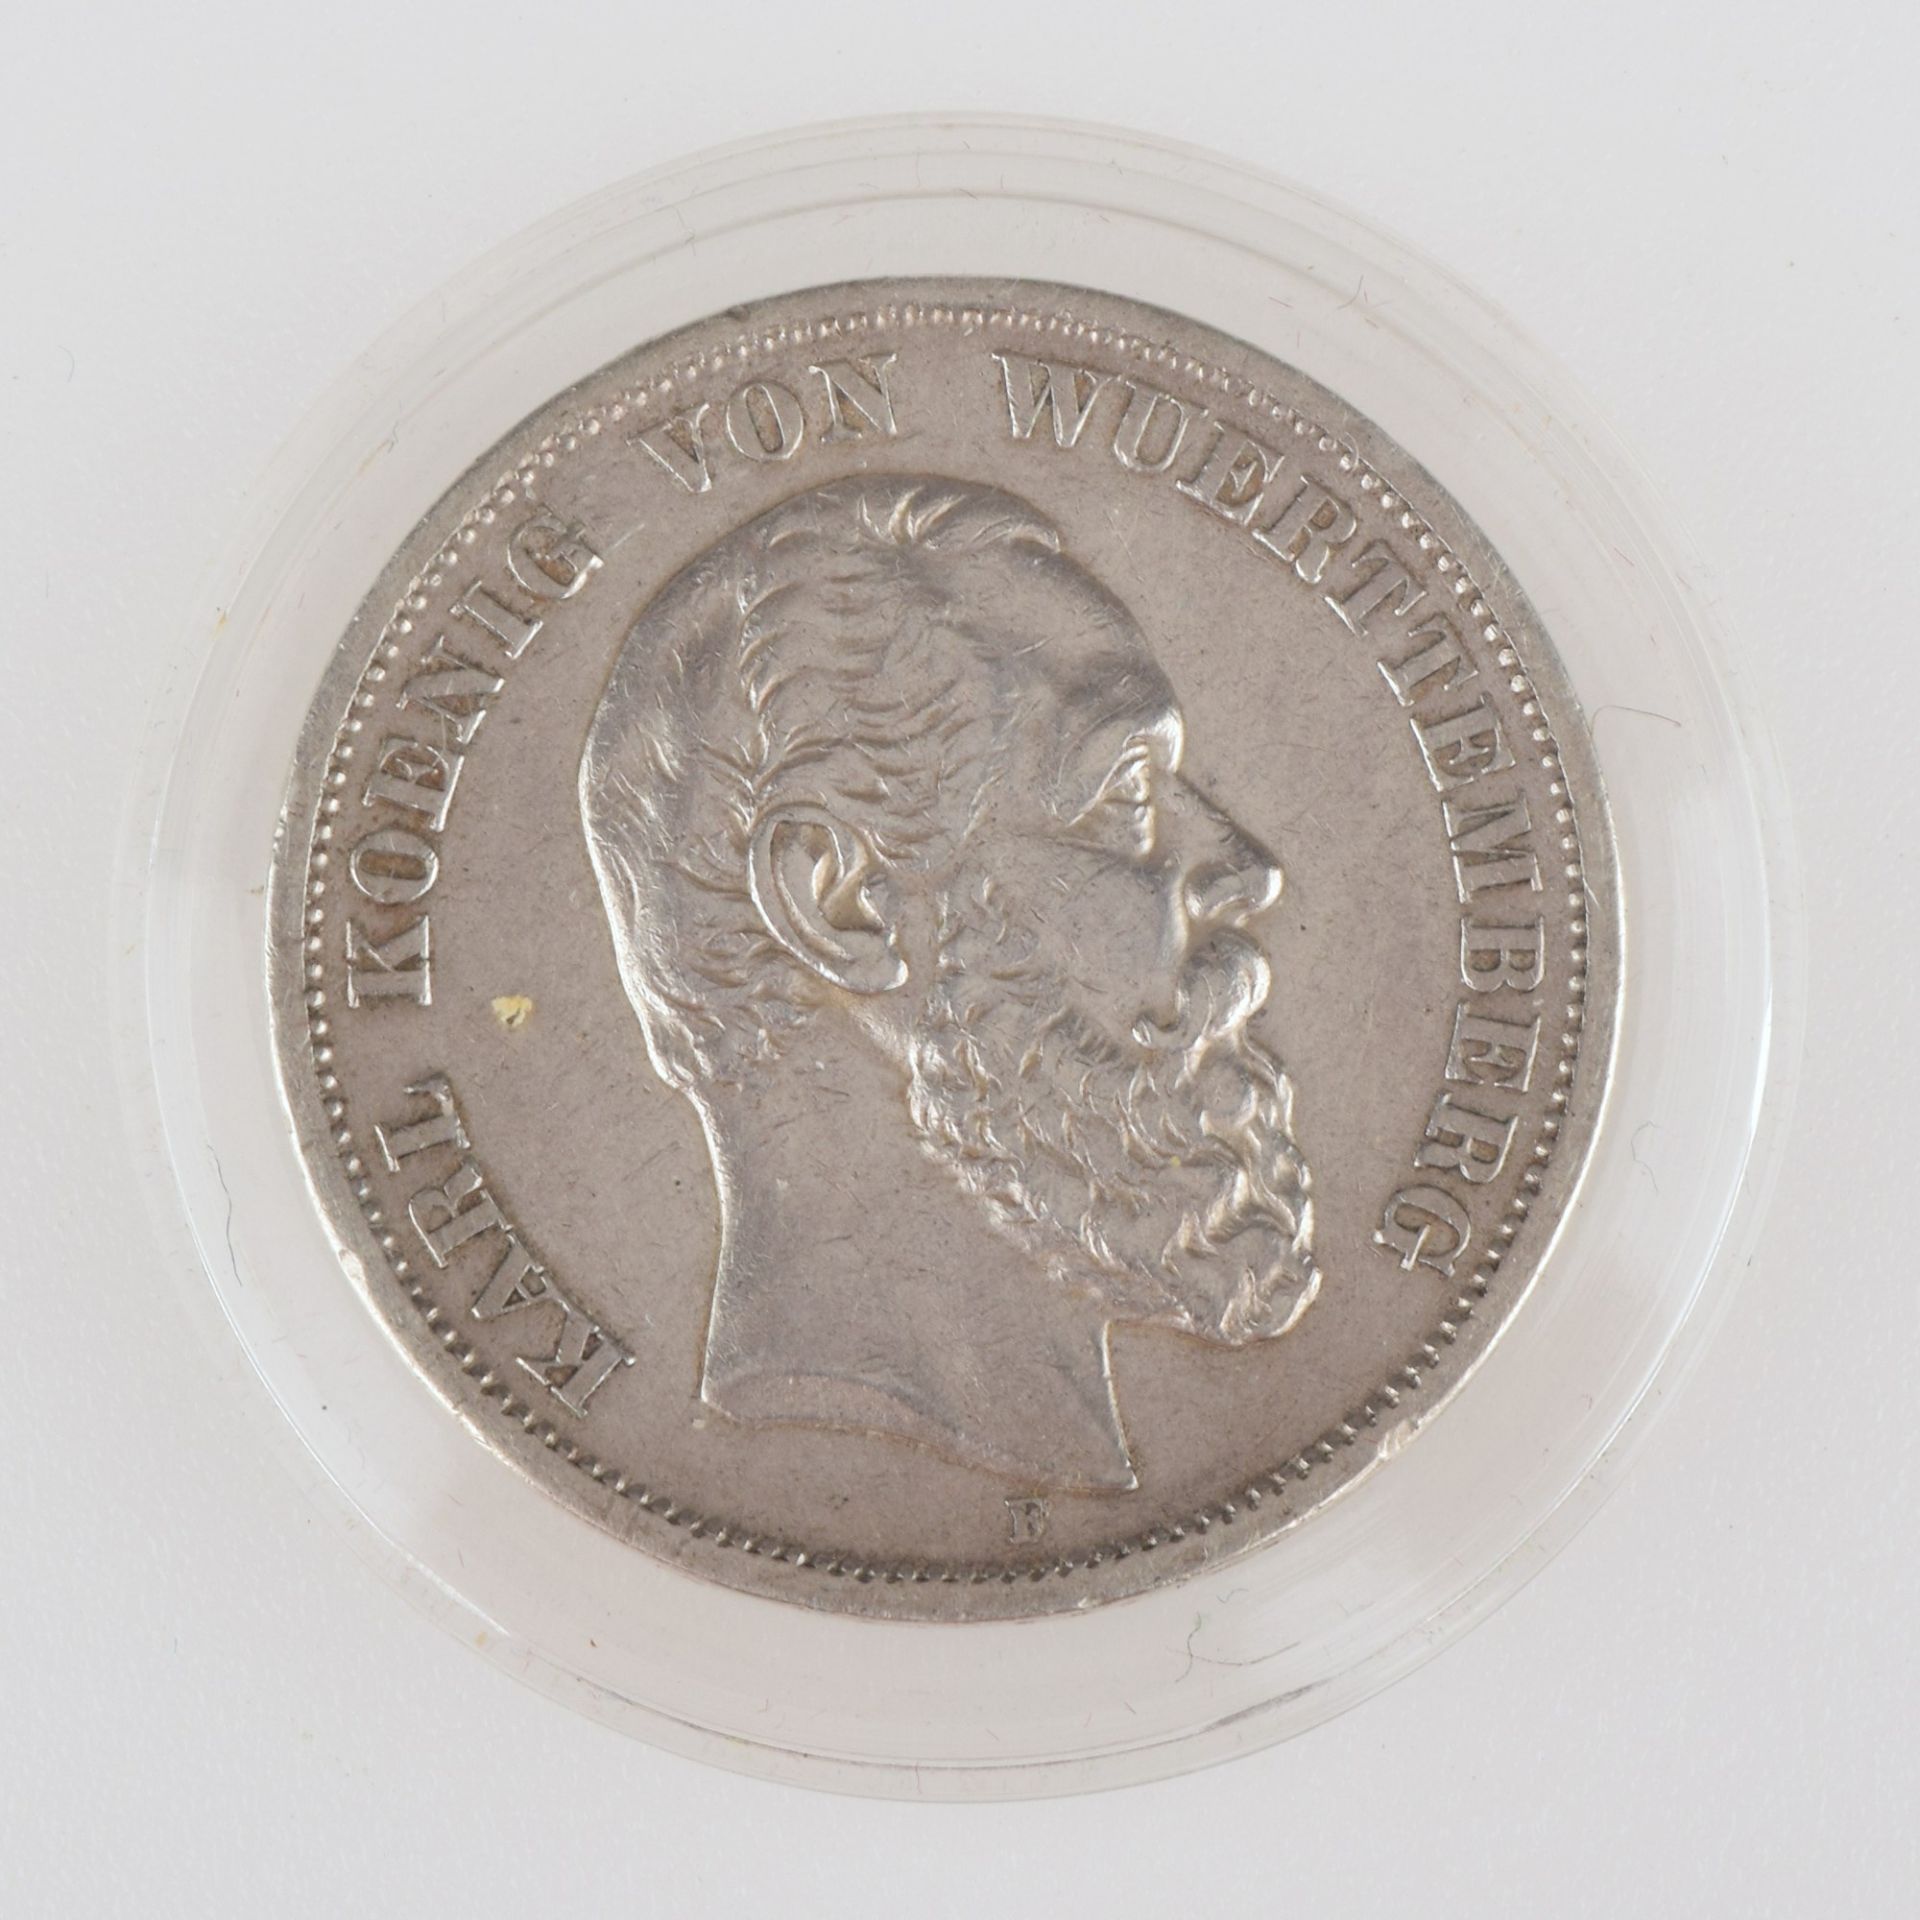 Silbermünze Kaiserreich - Württemberg 1876 5 Mark in Silber, av. Karl König von Württemberg Kopf - Image 2 of 3